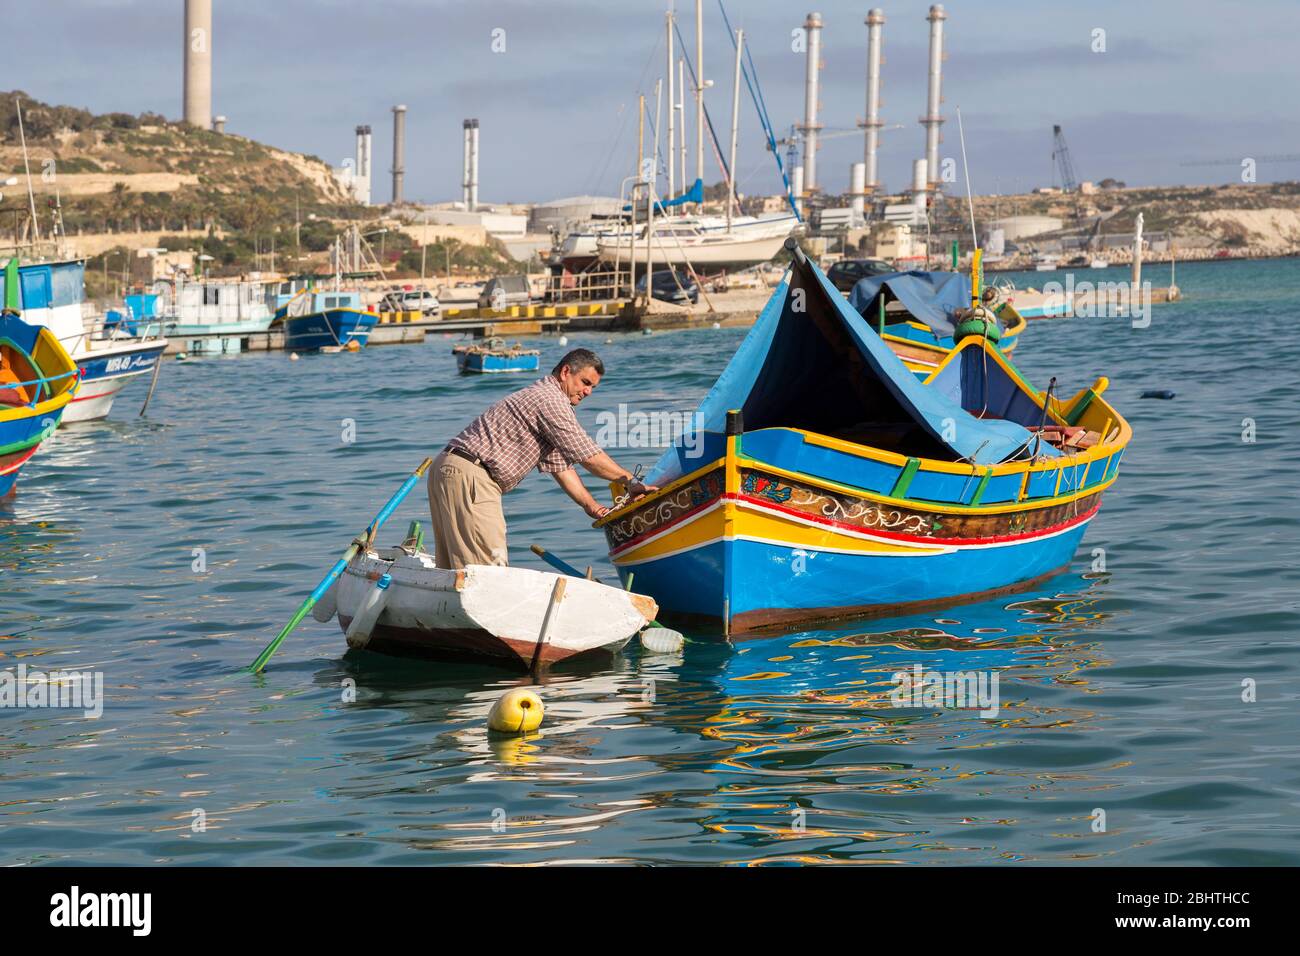 Man tending traditional luzzo fishing boat, Marsaxlokk, Malta Stock Photo